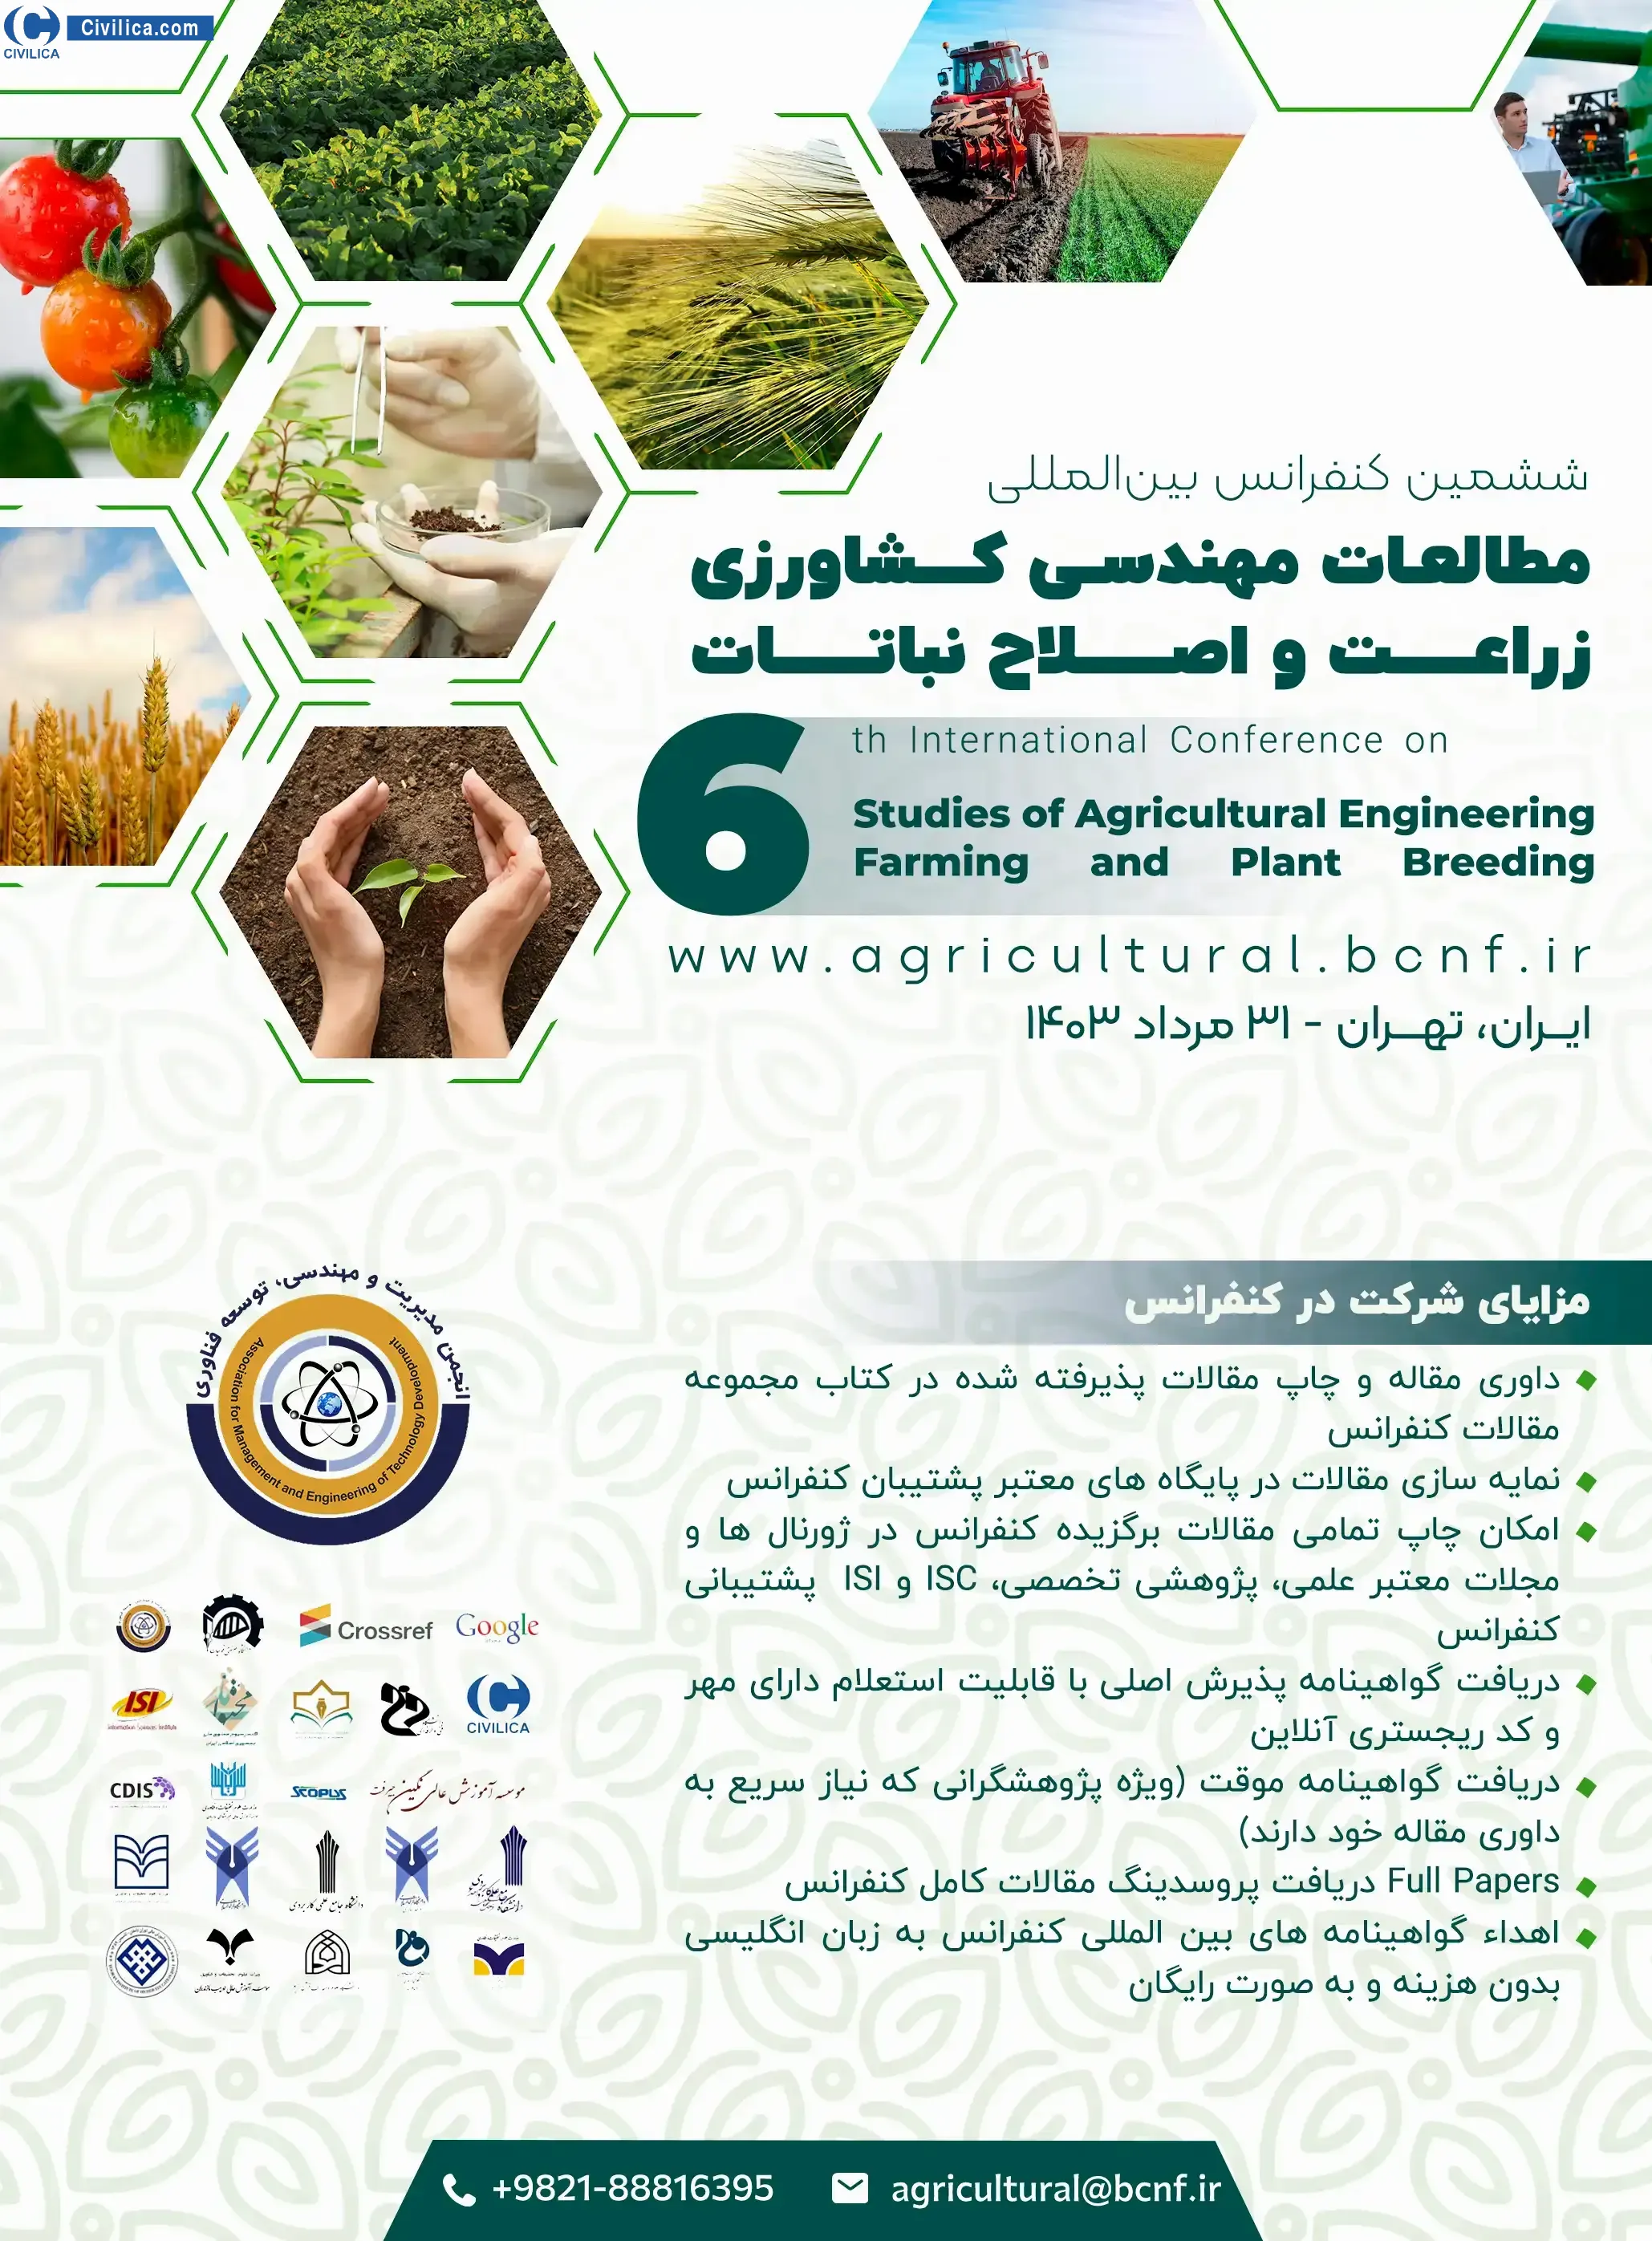 ششمین کنفرانس بین المللی مطالعات مهندسی کشاورزی، زراعت و اصلاح نباتات